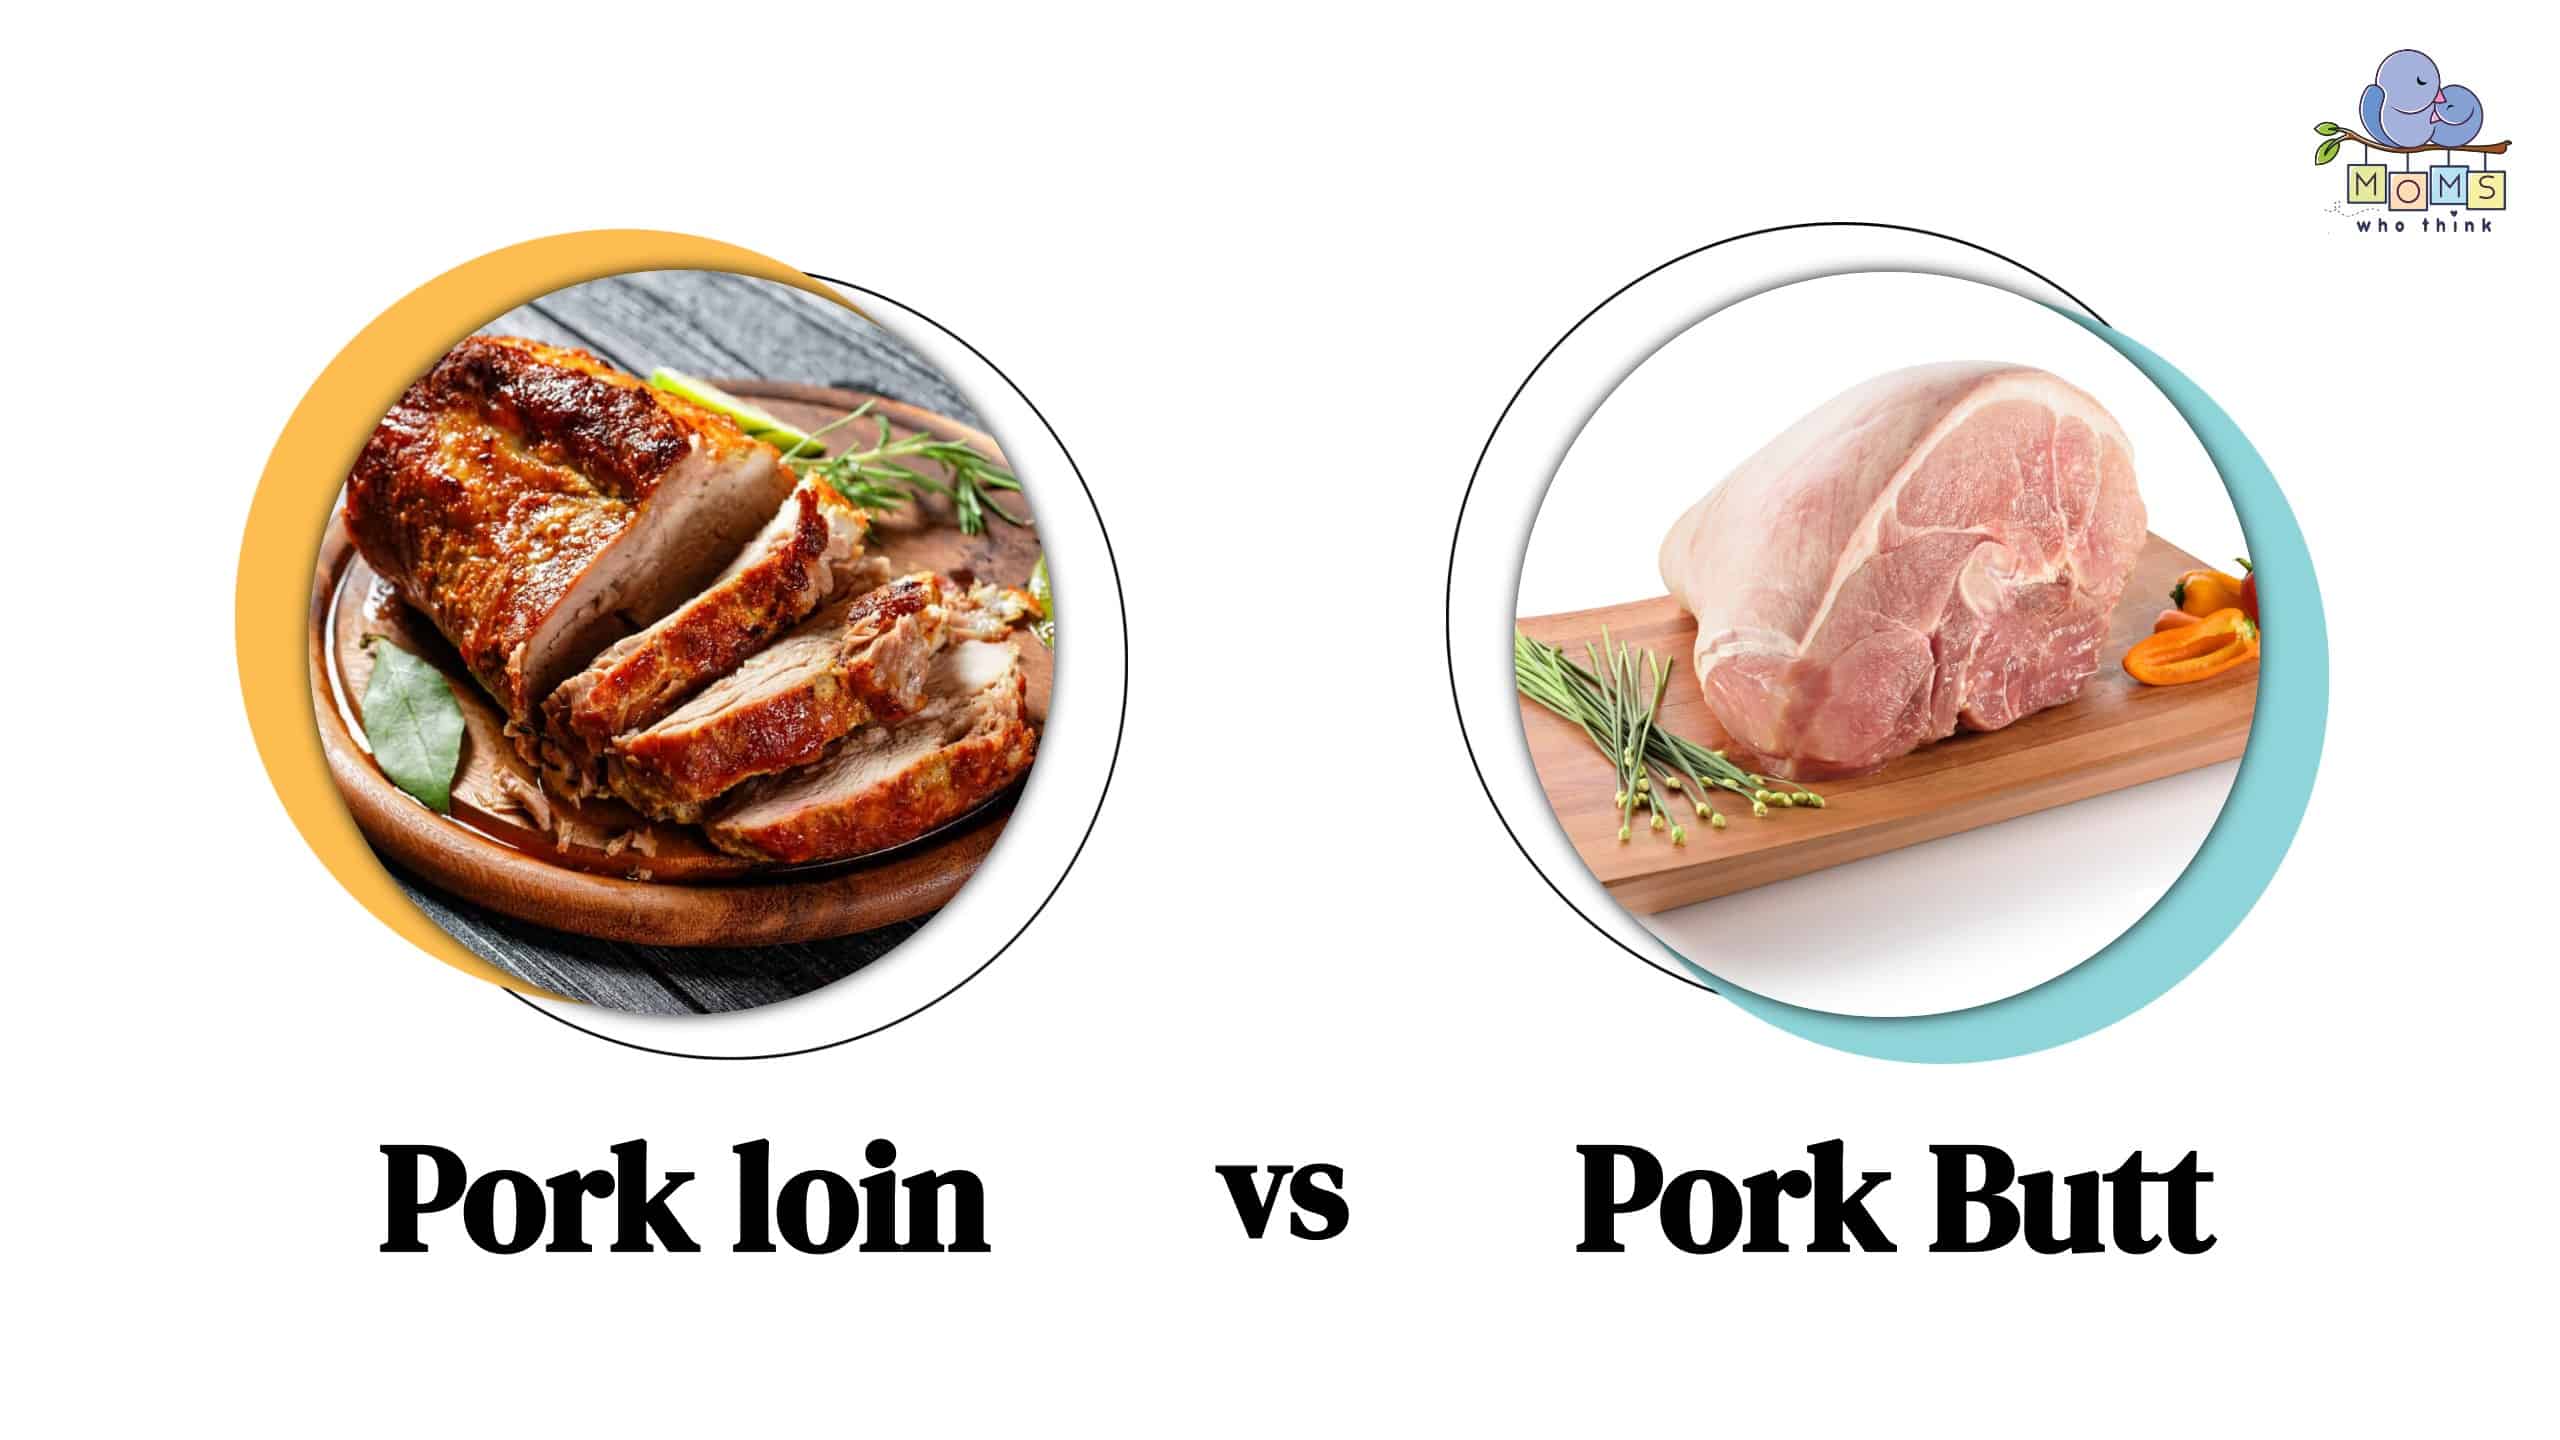 Pork loin vs Pork Butt